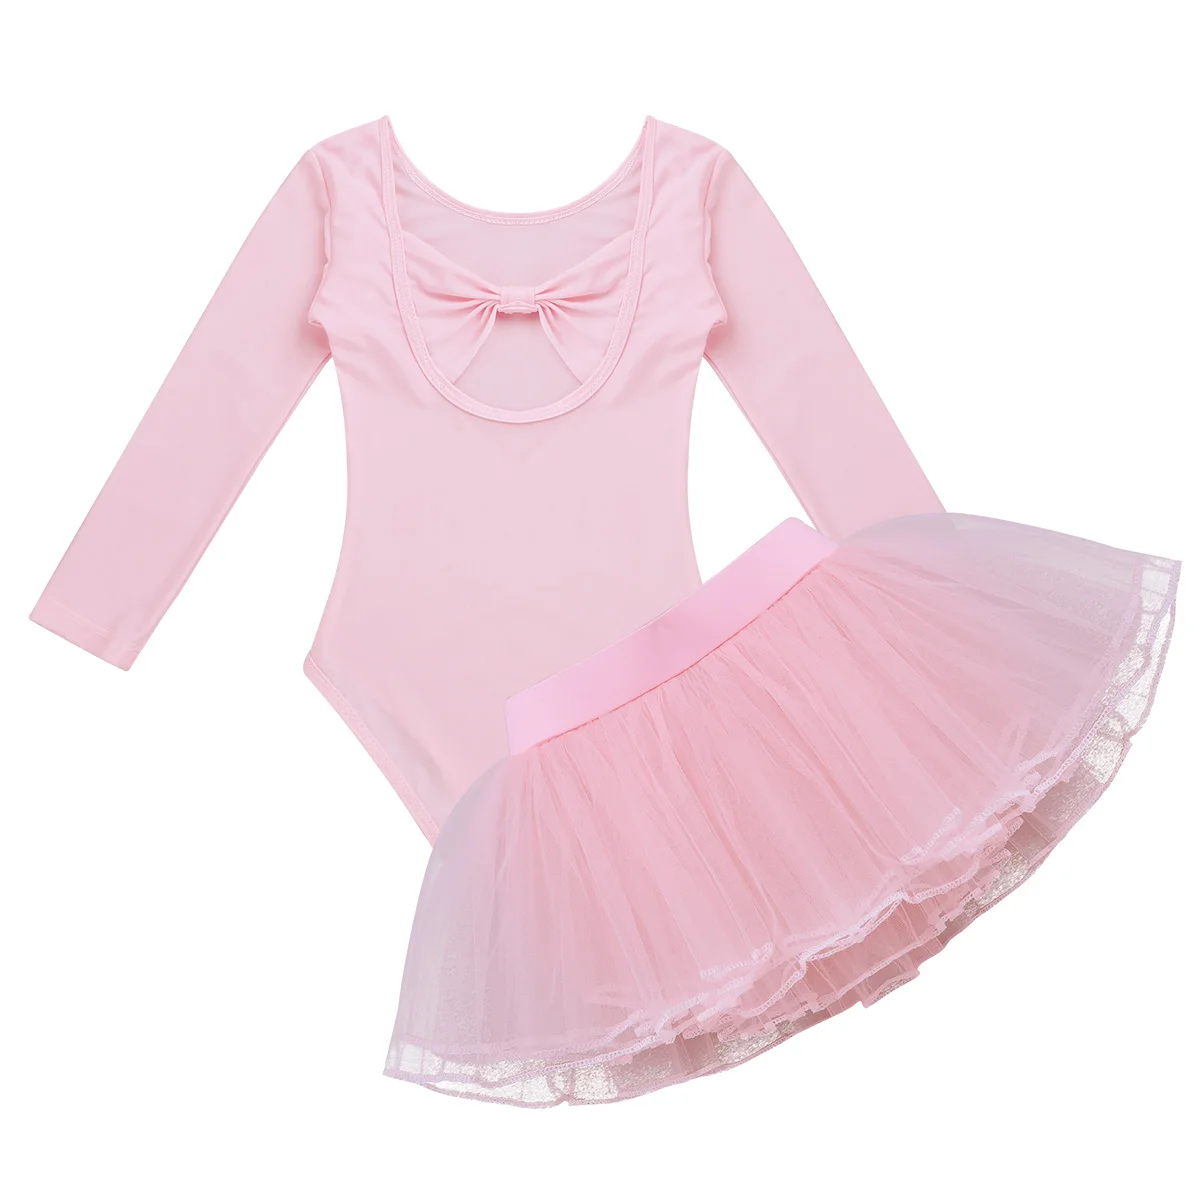 TiaoBug/балетное платье-пачка для девочек танцевальный купальник с длинными рукавами и сетчатой юбкой детский гимнастический купальник, детский танцевальный сценический костюм, комплект